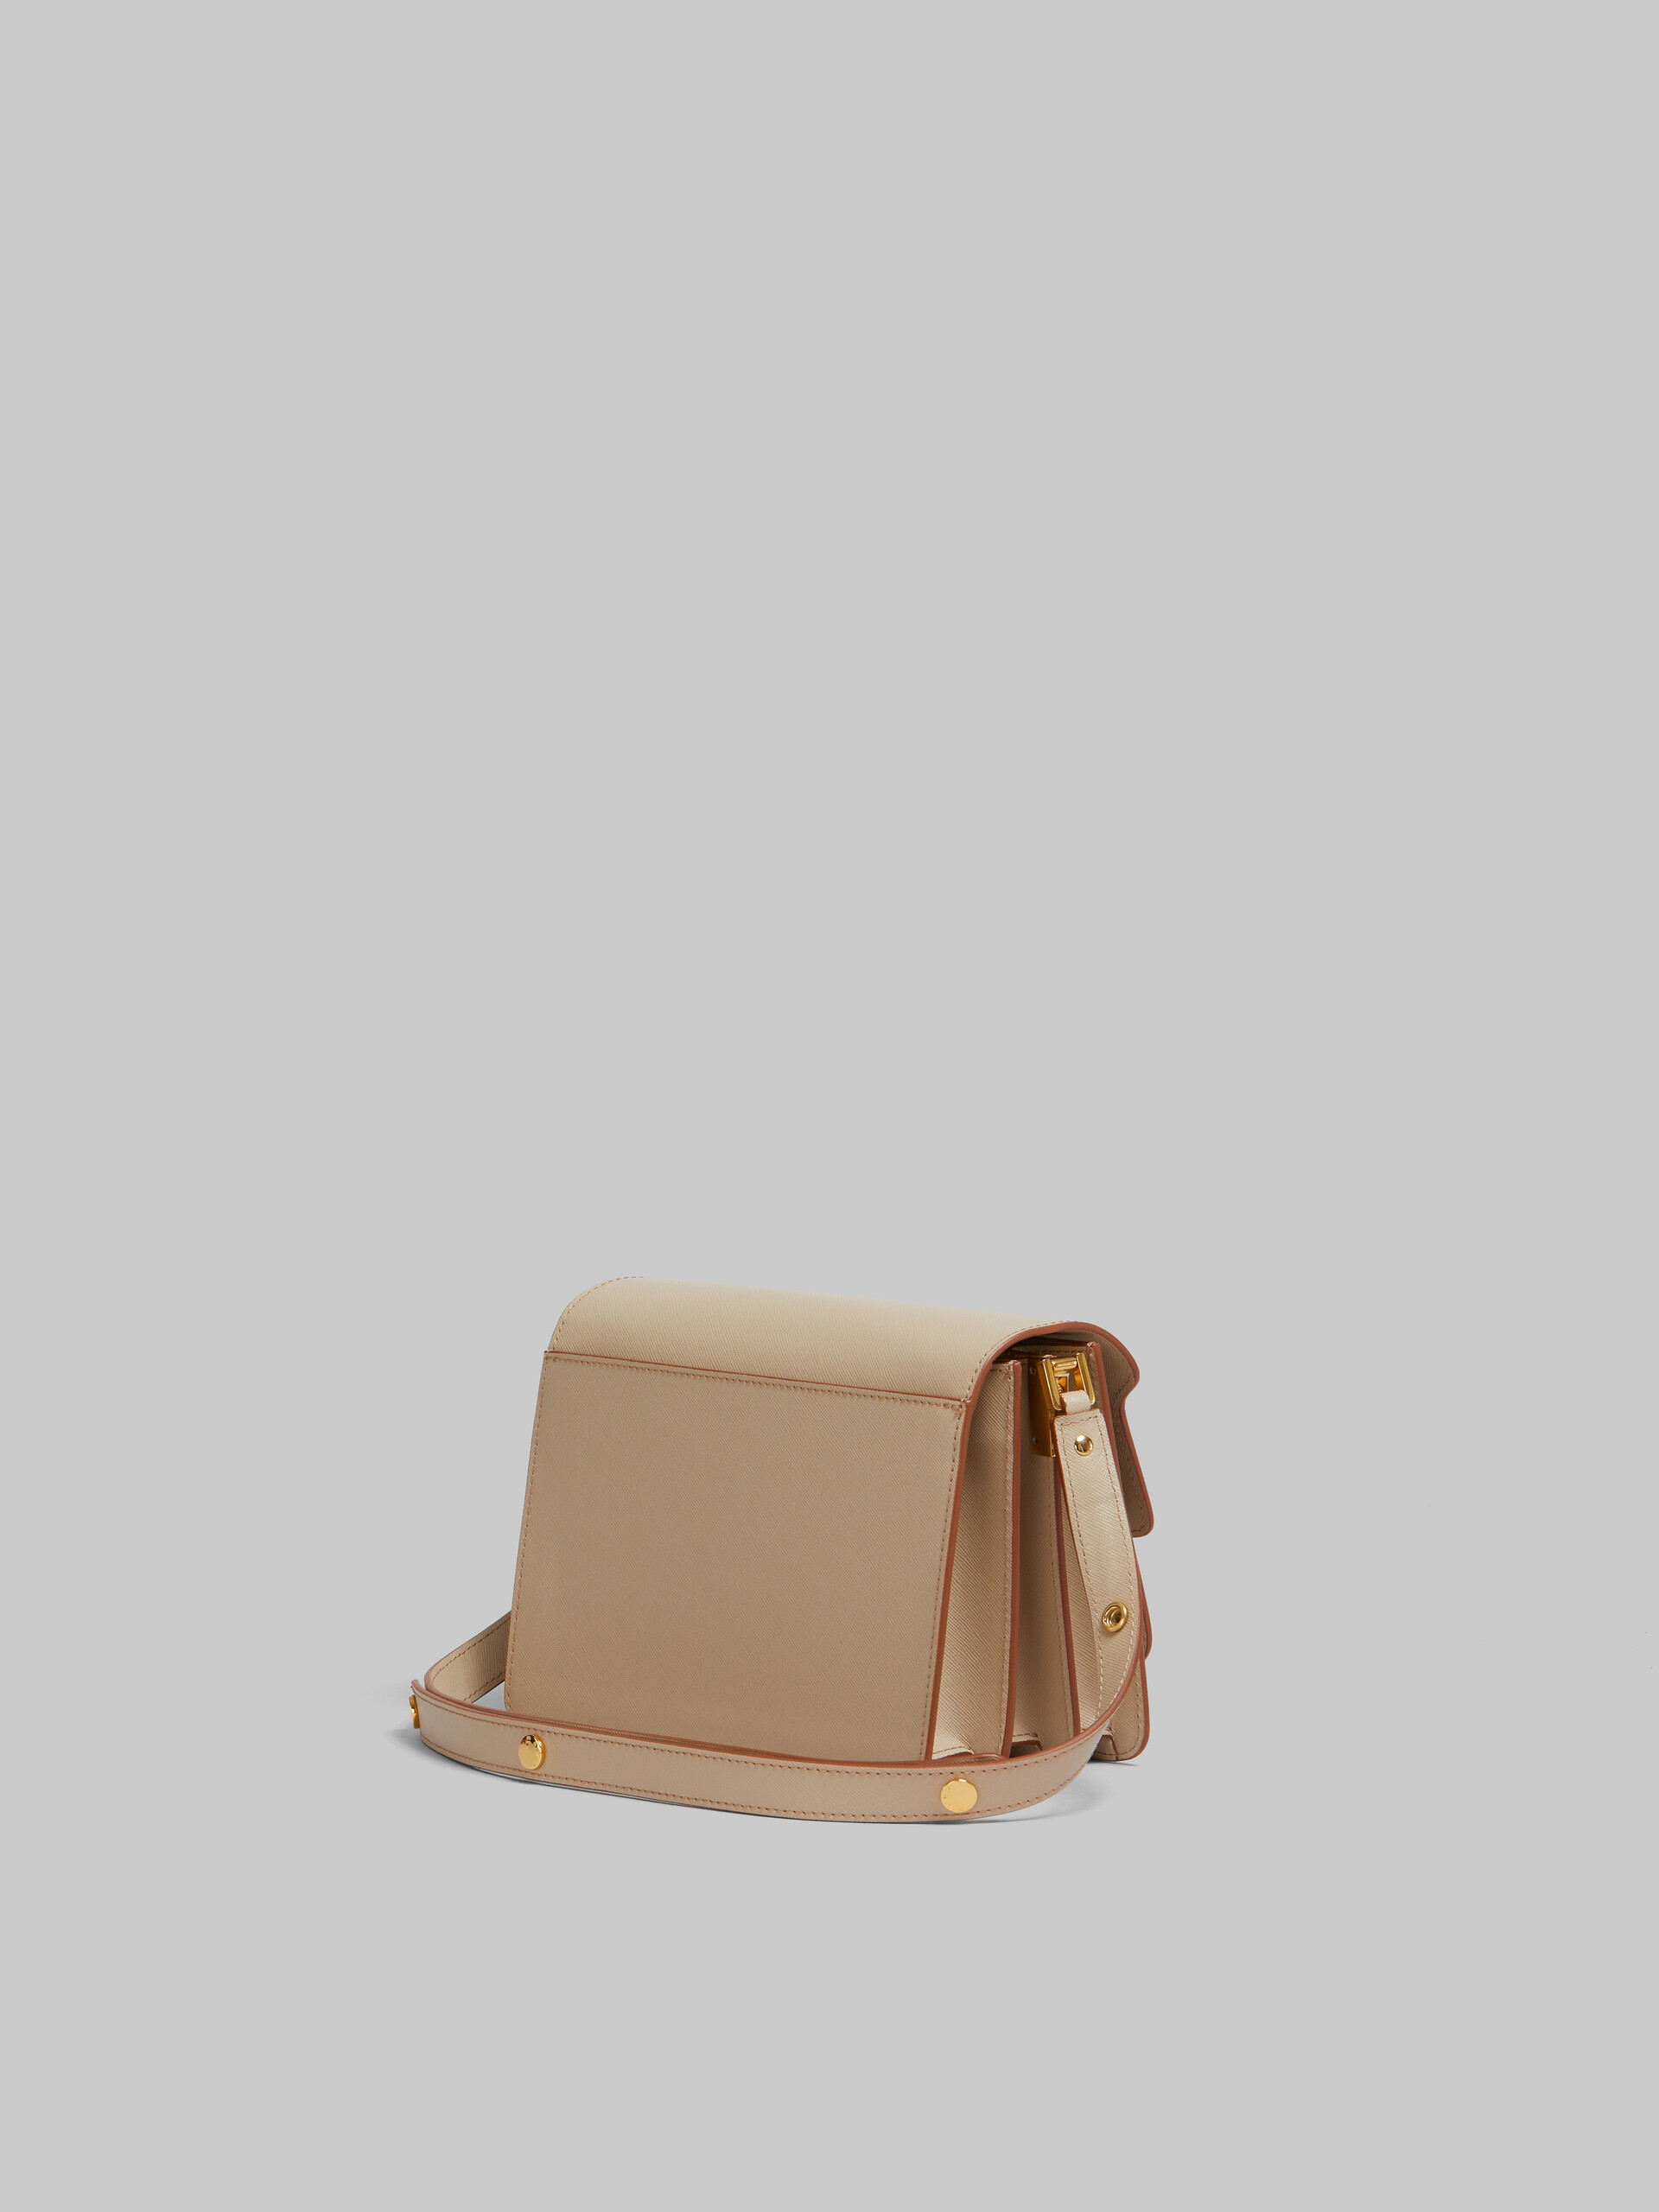 Trunk Bag Media in pelle saffiano beige - Borse a spalla - Image 3